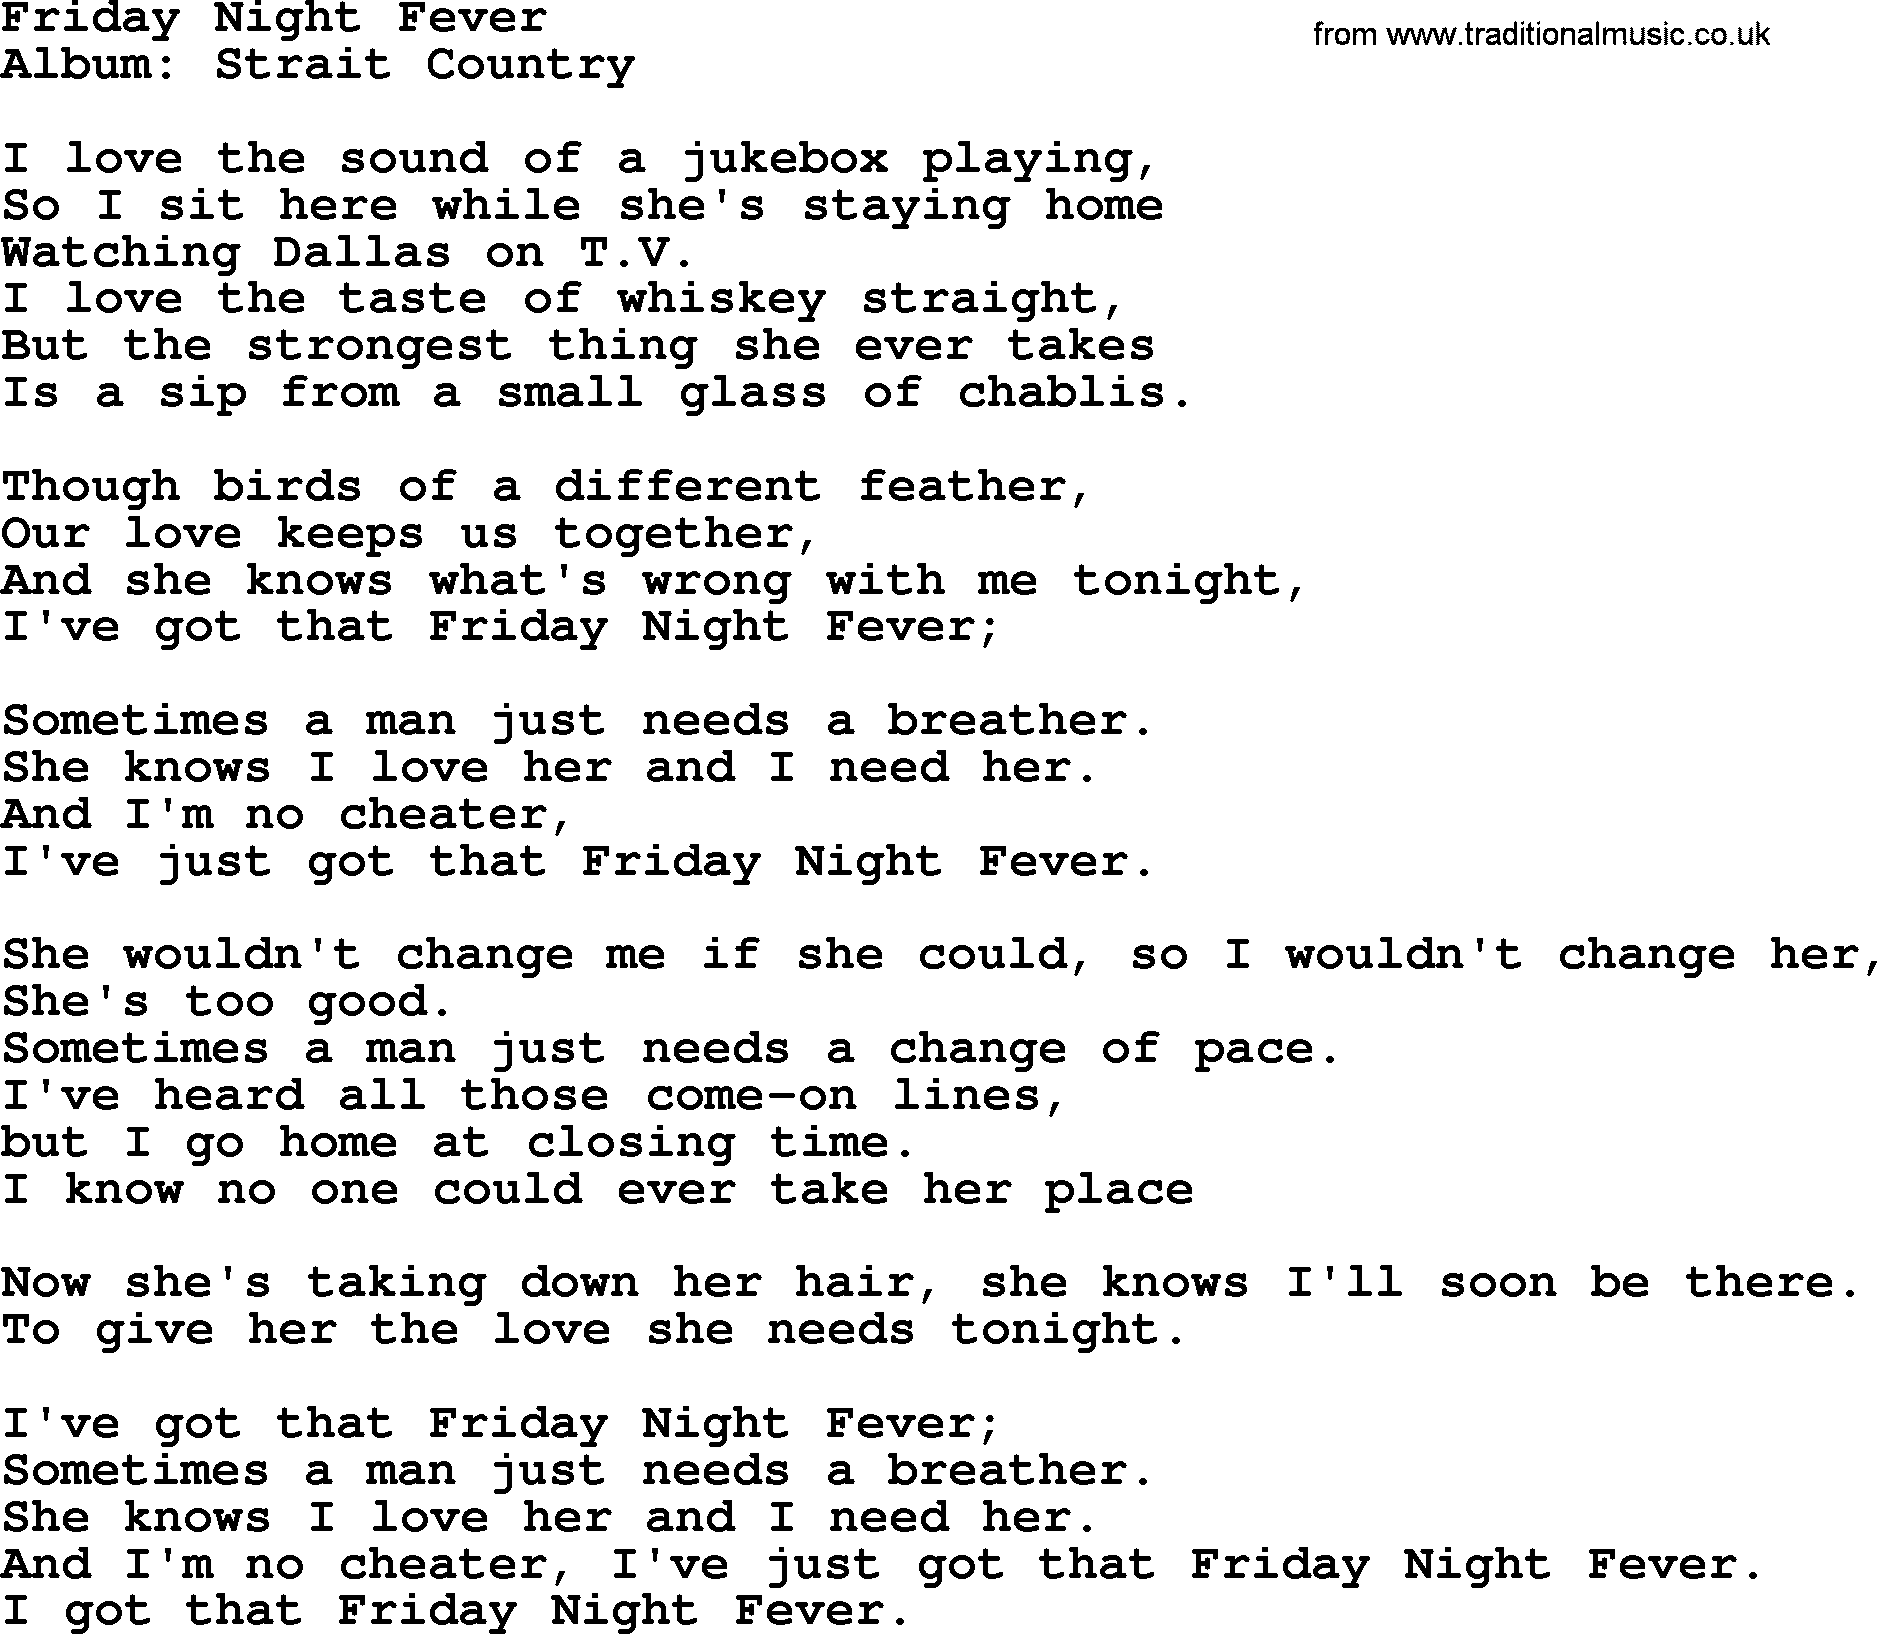 Friday Night Fever, by George Strait - lyrics